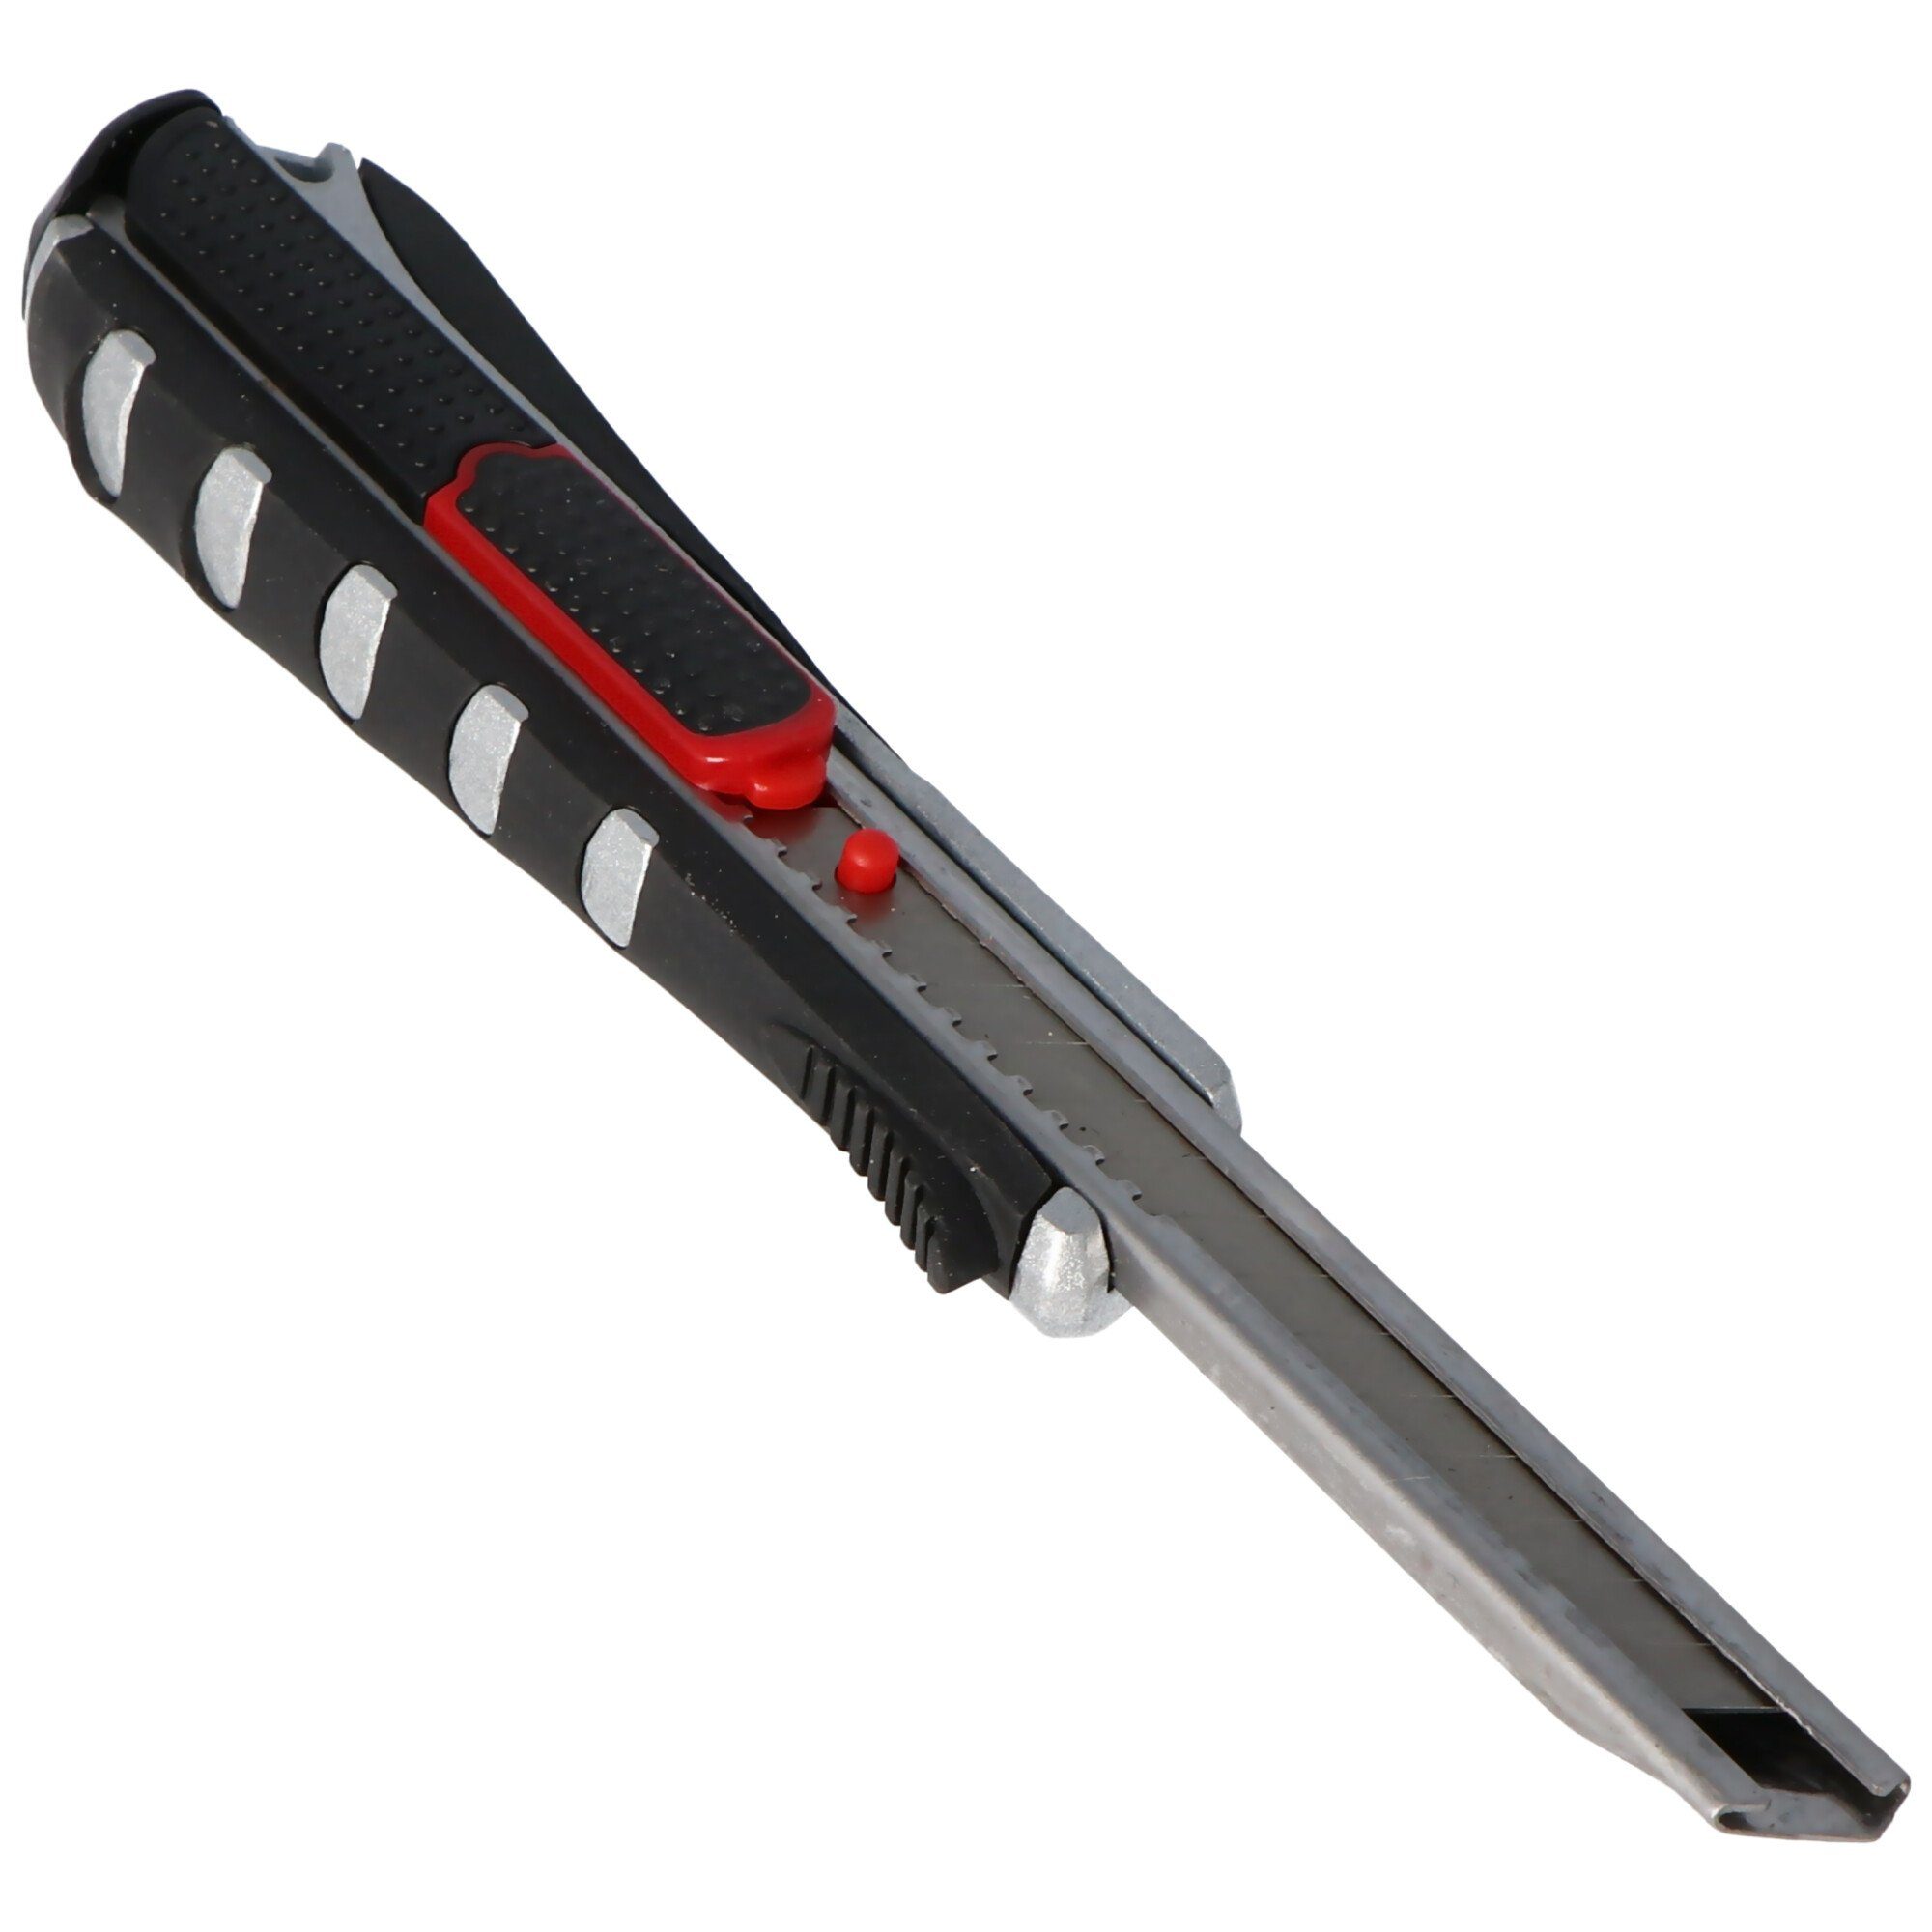 WEDO Cuttermesser Cutter 1-in-1 mit Klingenrückzug Rasterautomatik au automatischem und